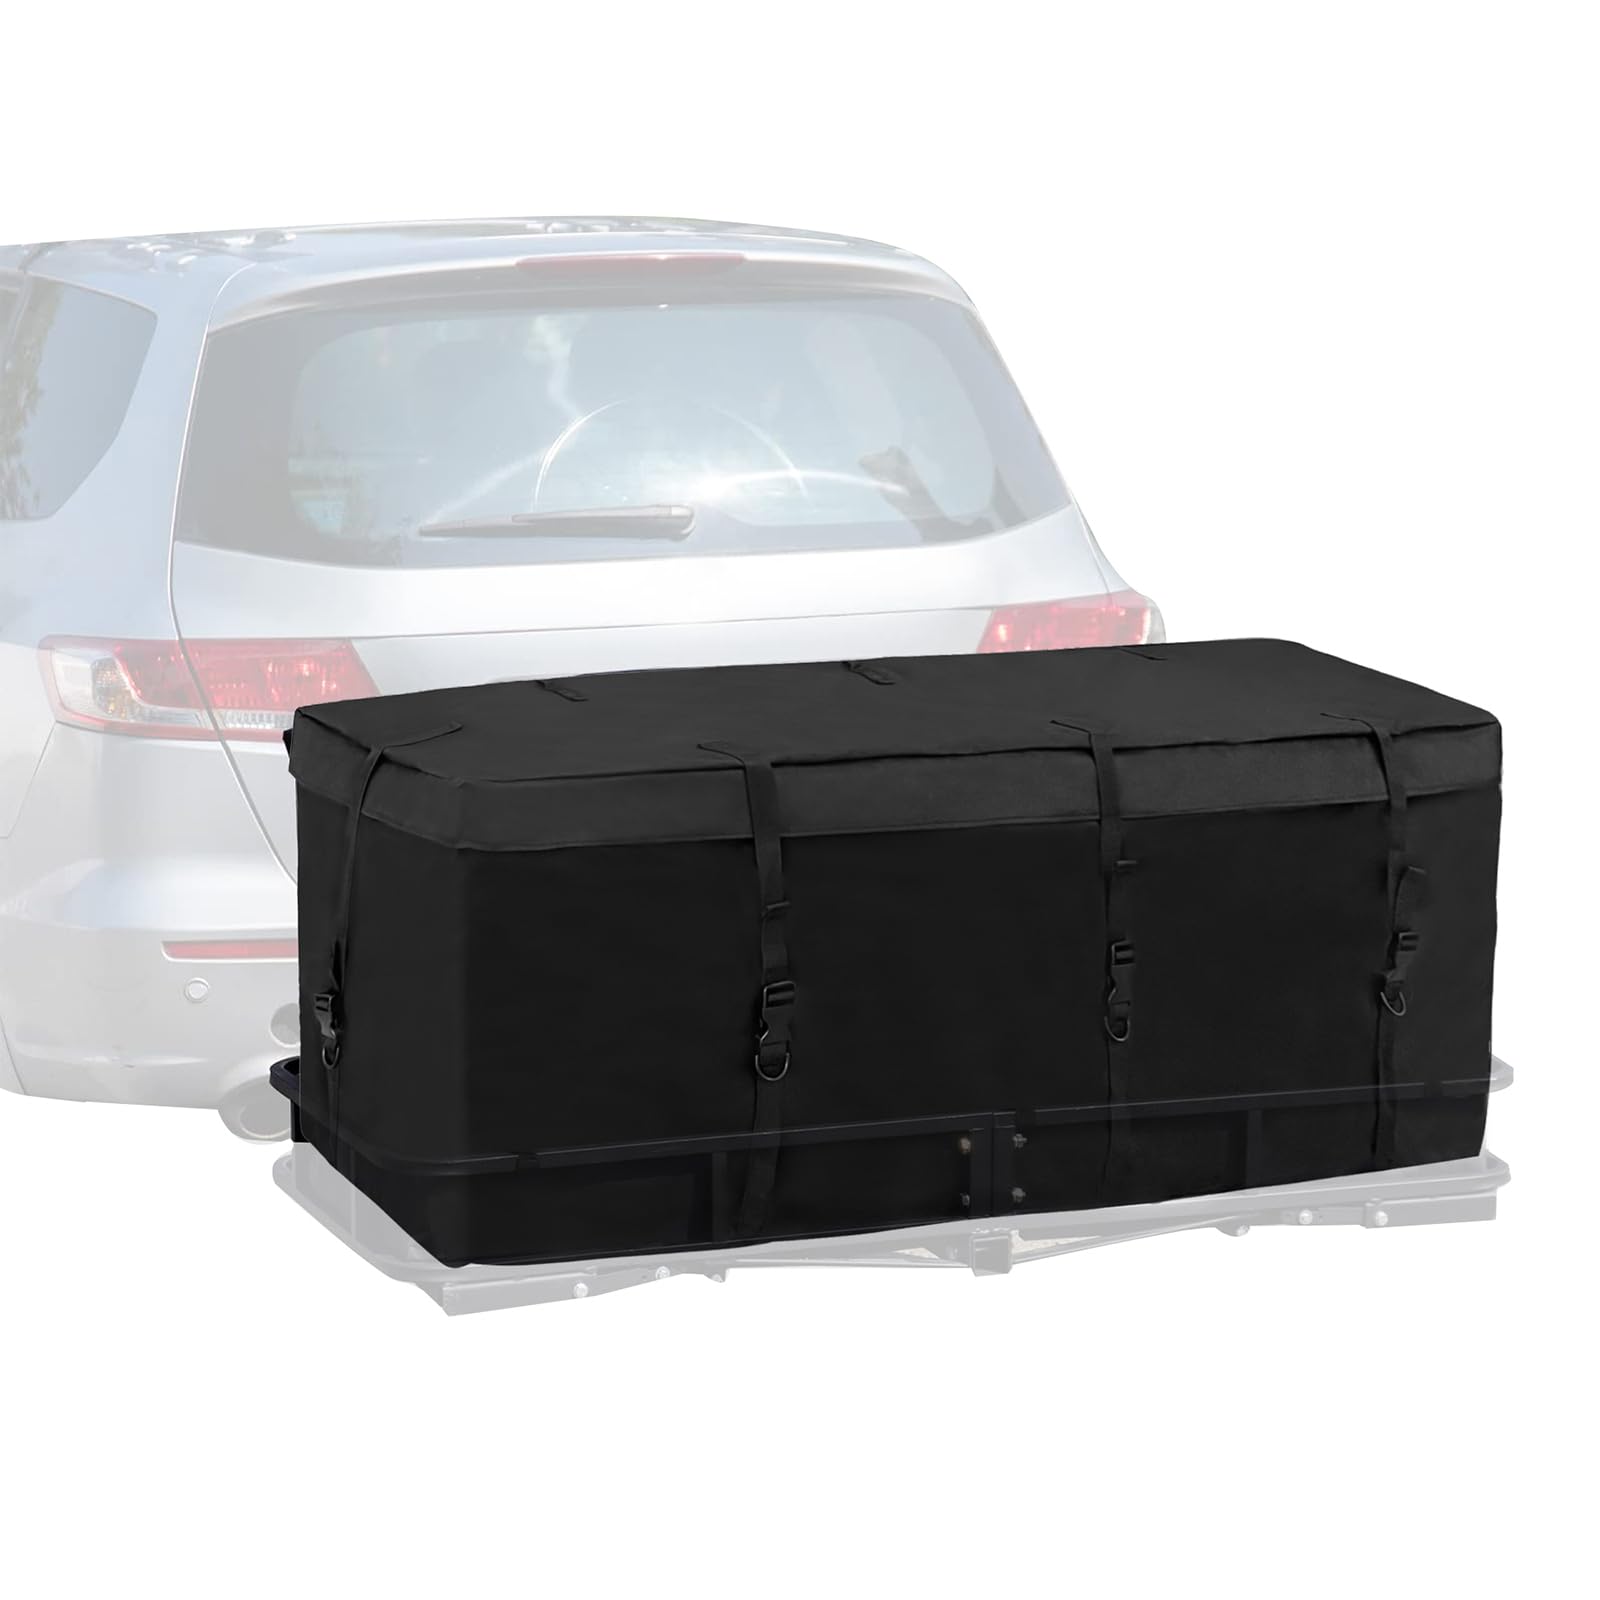 2 IN1 Auto Dachboxen Heckbox für Anhängerkupplung, Dachtasche Gepäckbox Dachgepäckträger für Reisen und Gepäcktransport, Wasserdicht 600D (A) von OUGPIU